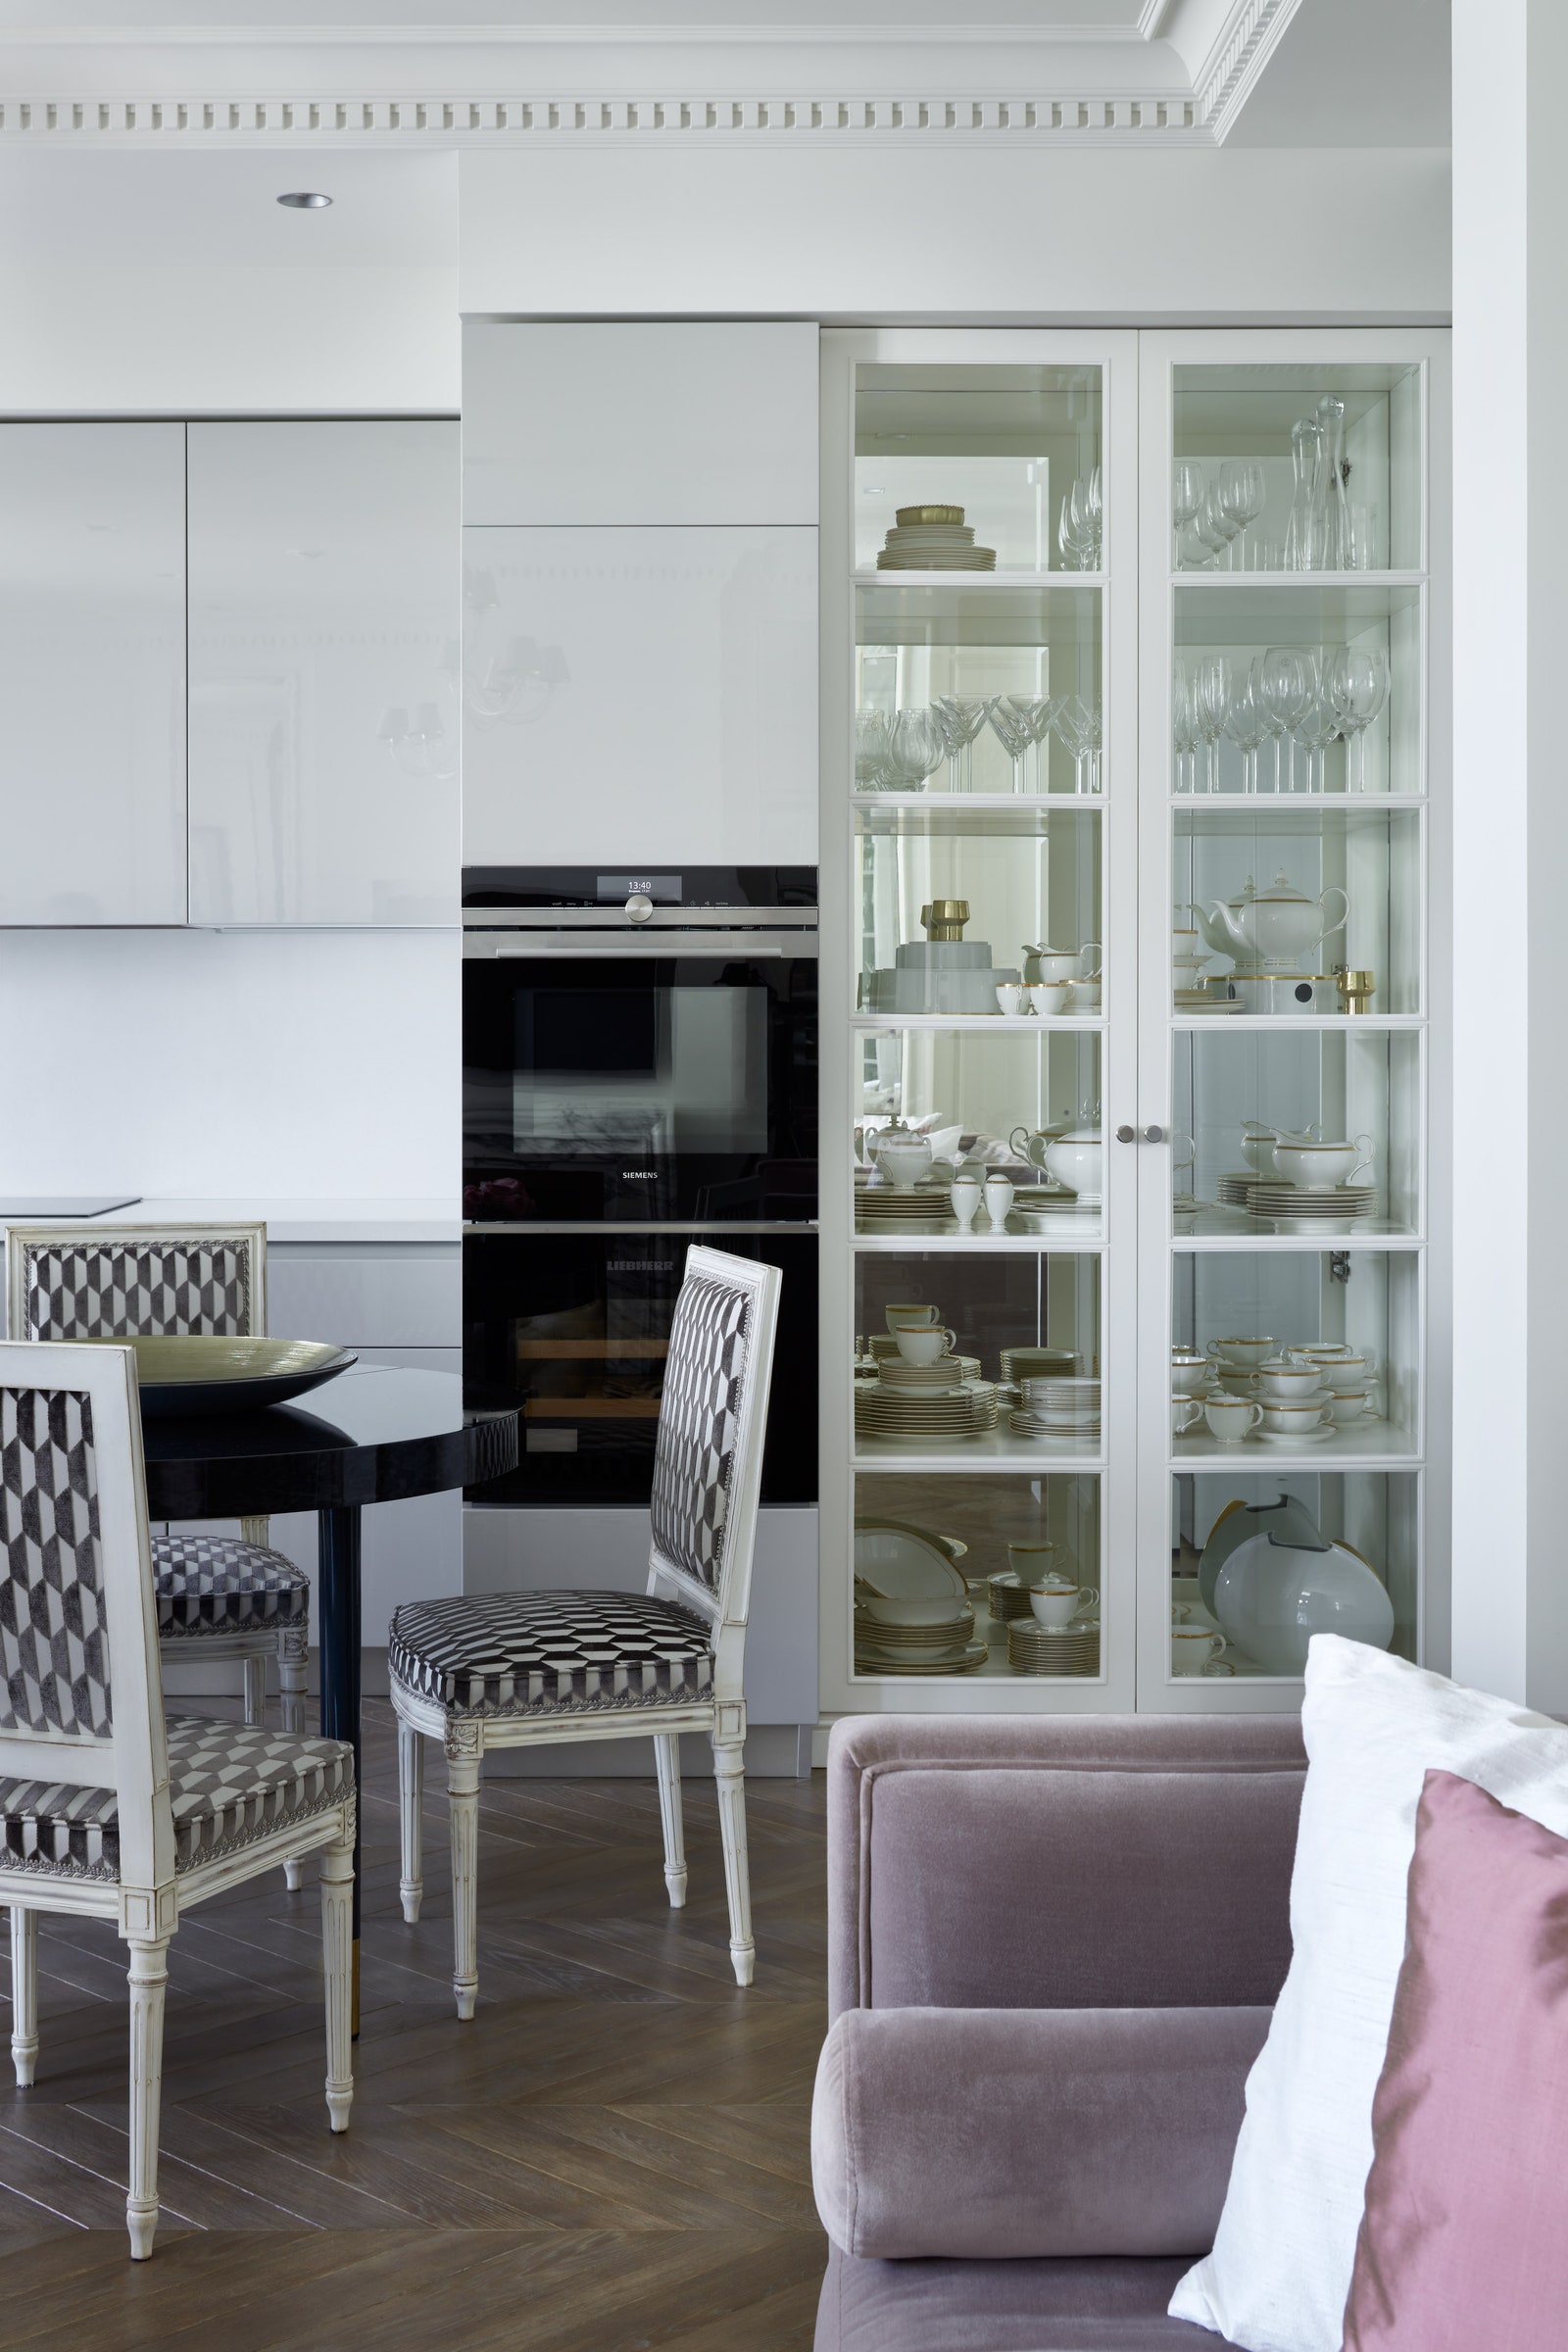 Фрагмент кухни. Кухня Scavolini классические стулья обиты современной тканью с чернобелым принтом витрина изготовлена на...